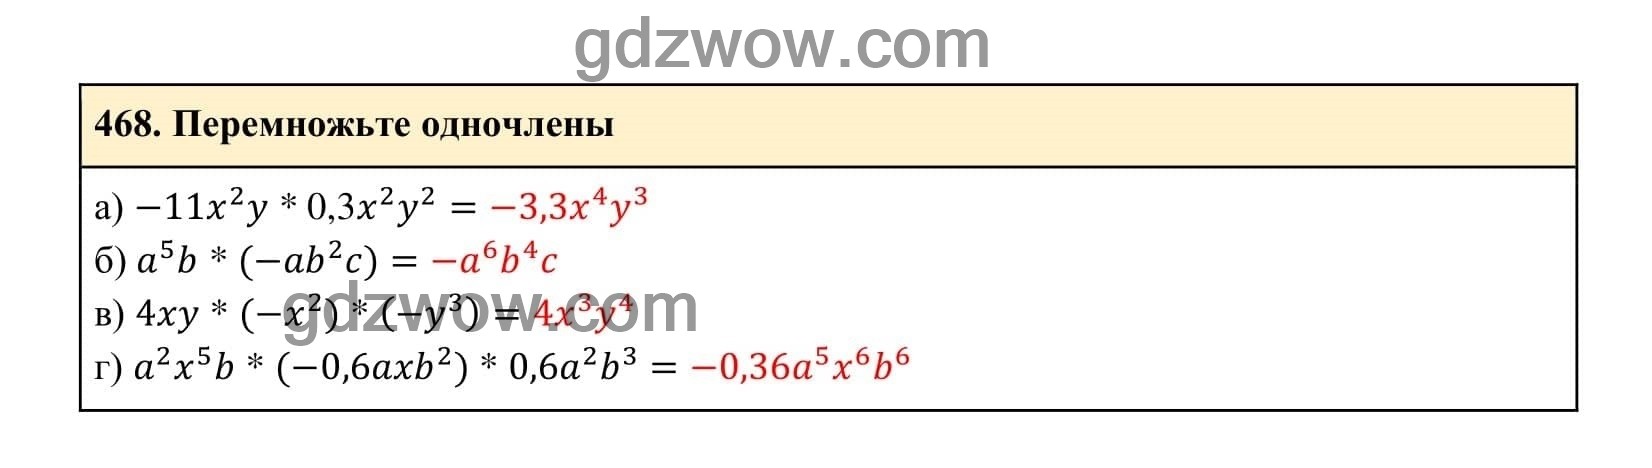 Упражнение 468 - ГДЗ по Алгебре 7 класс Учебник Макарычев (решебник) - GDZwow